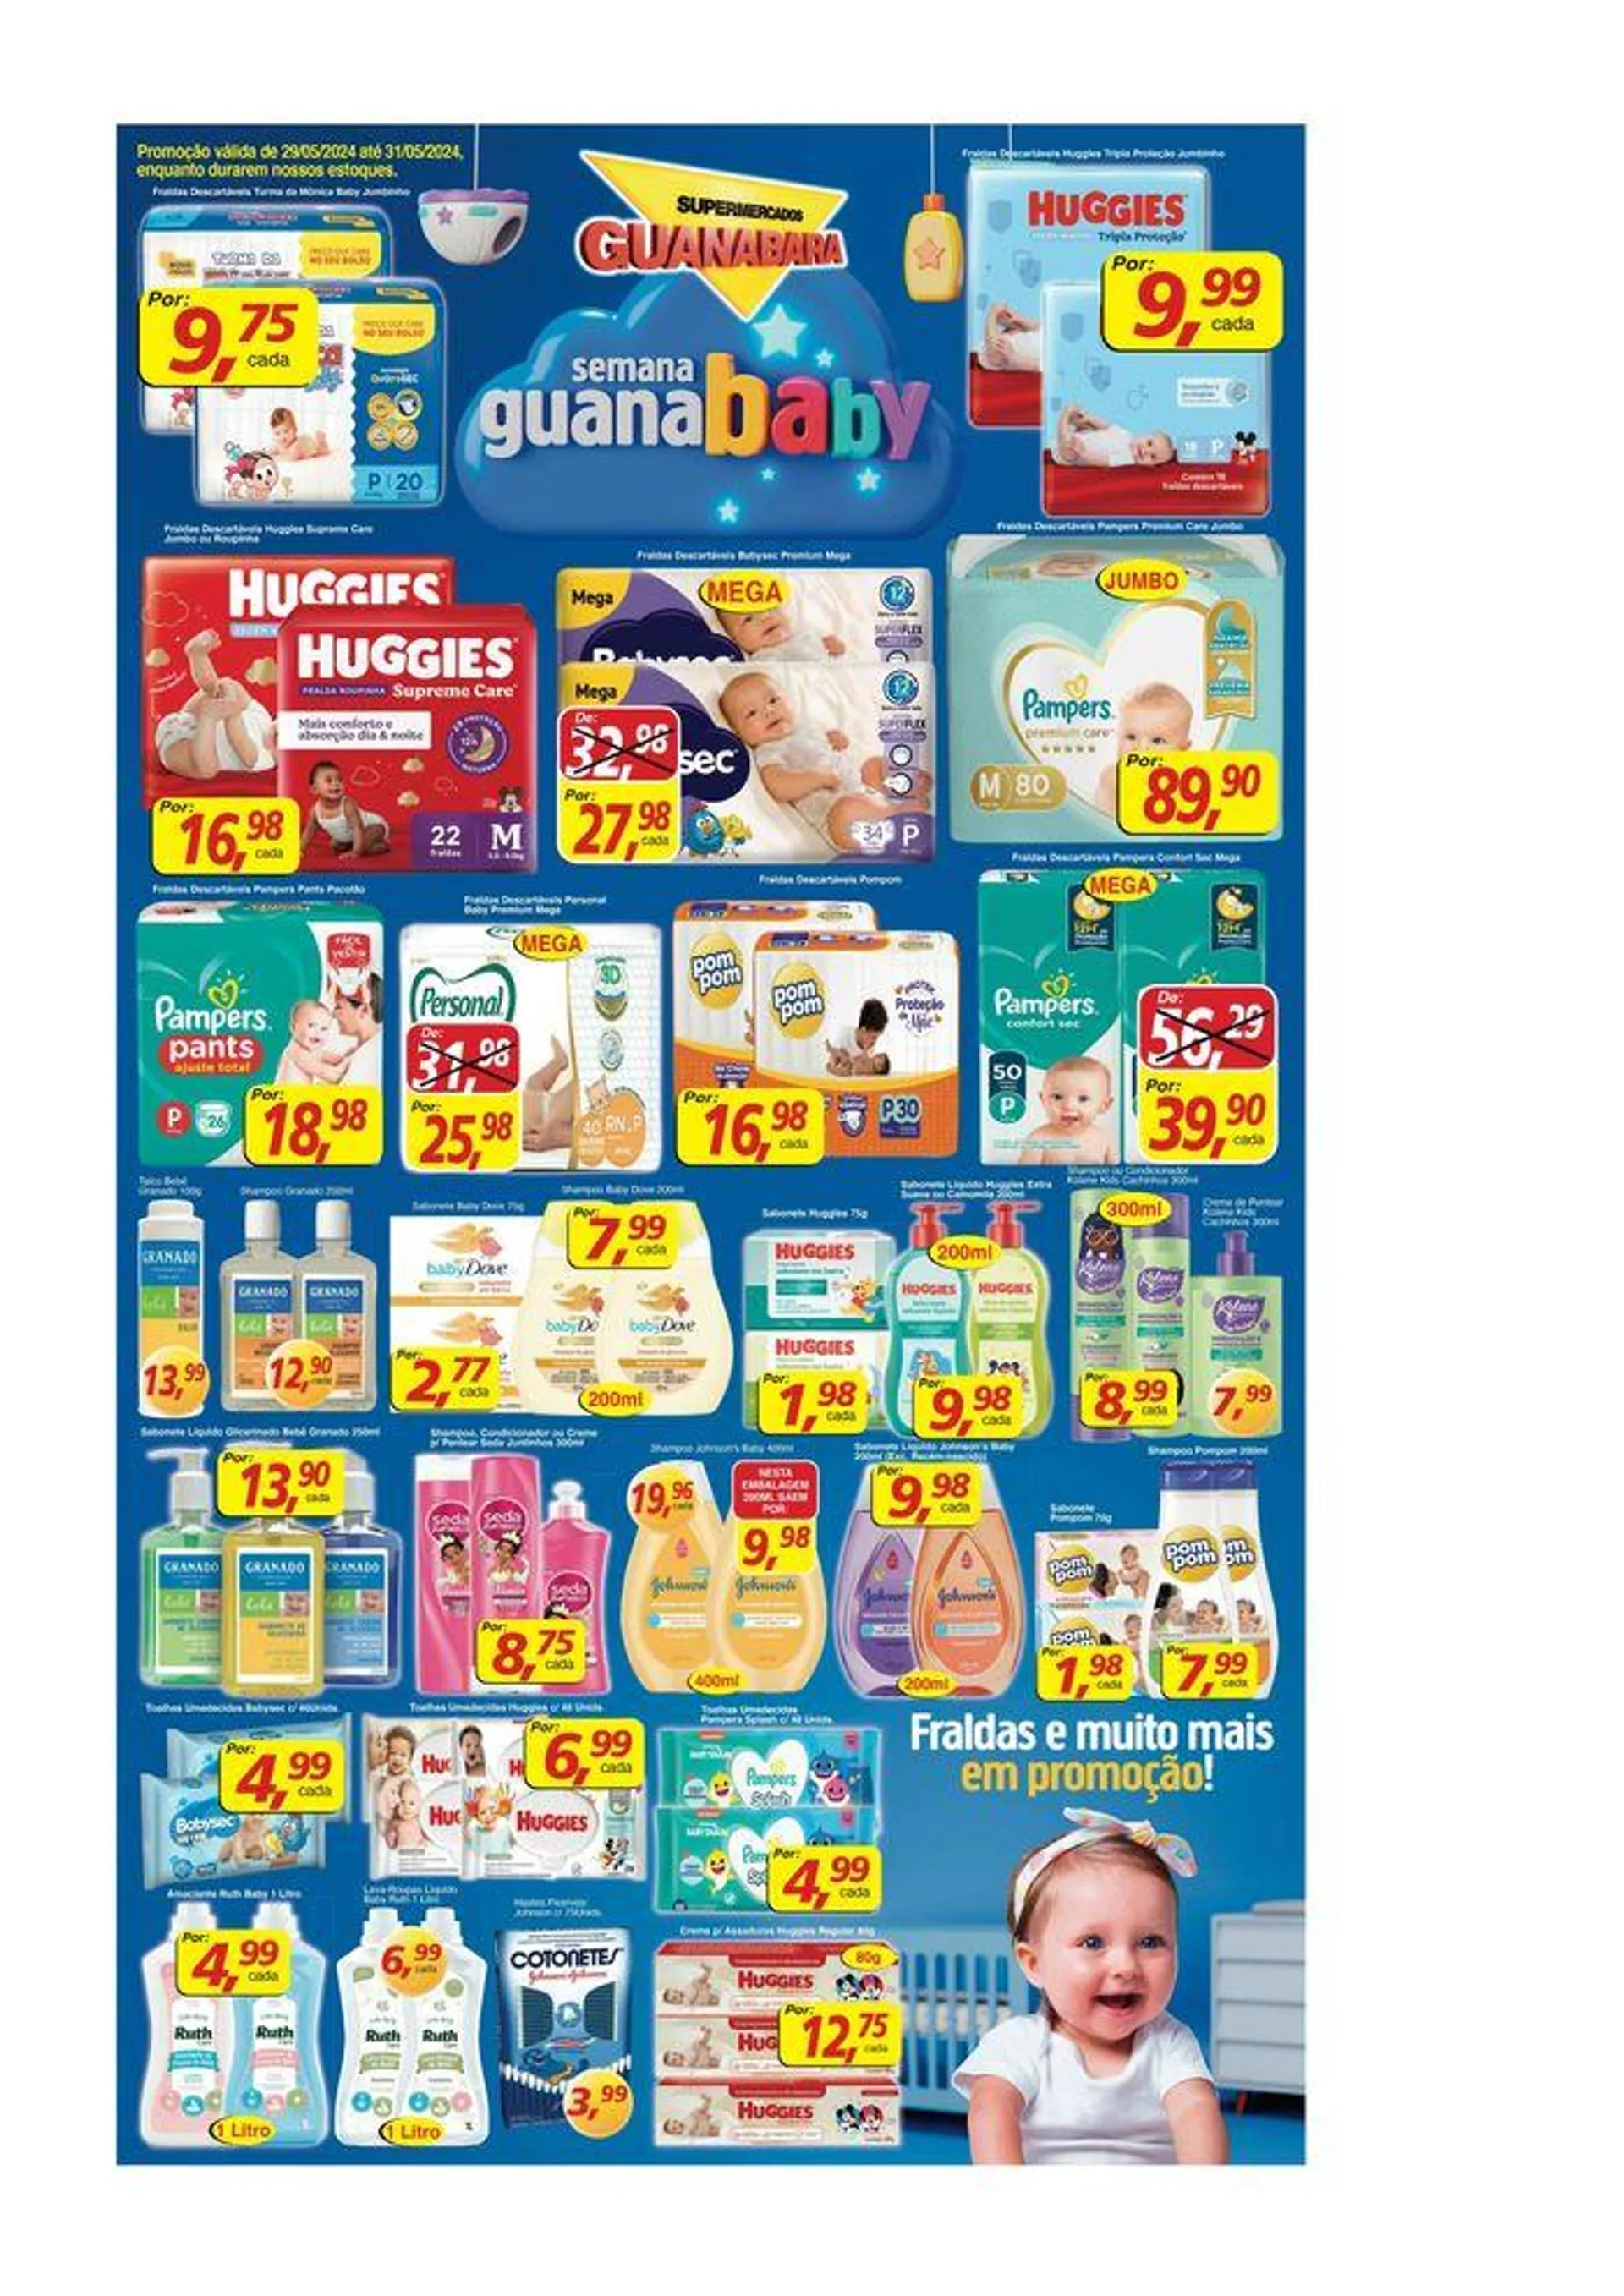 Ofertas Supermercados Guanabara - 1